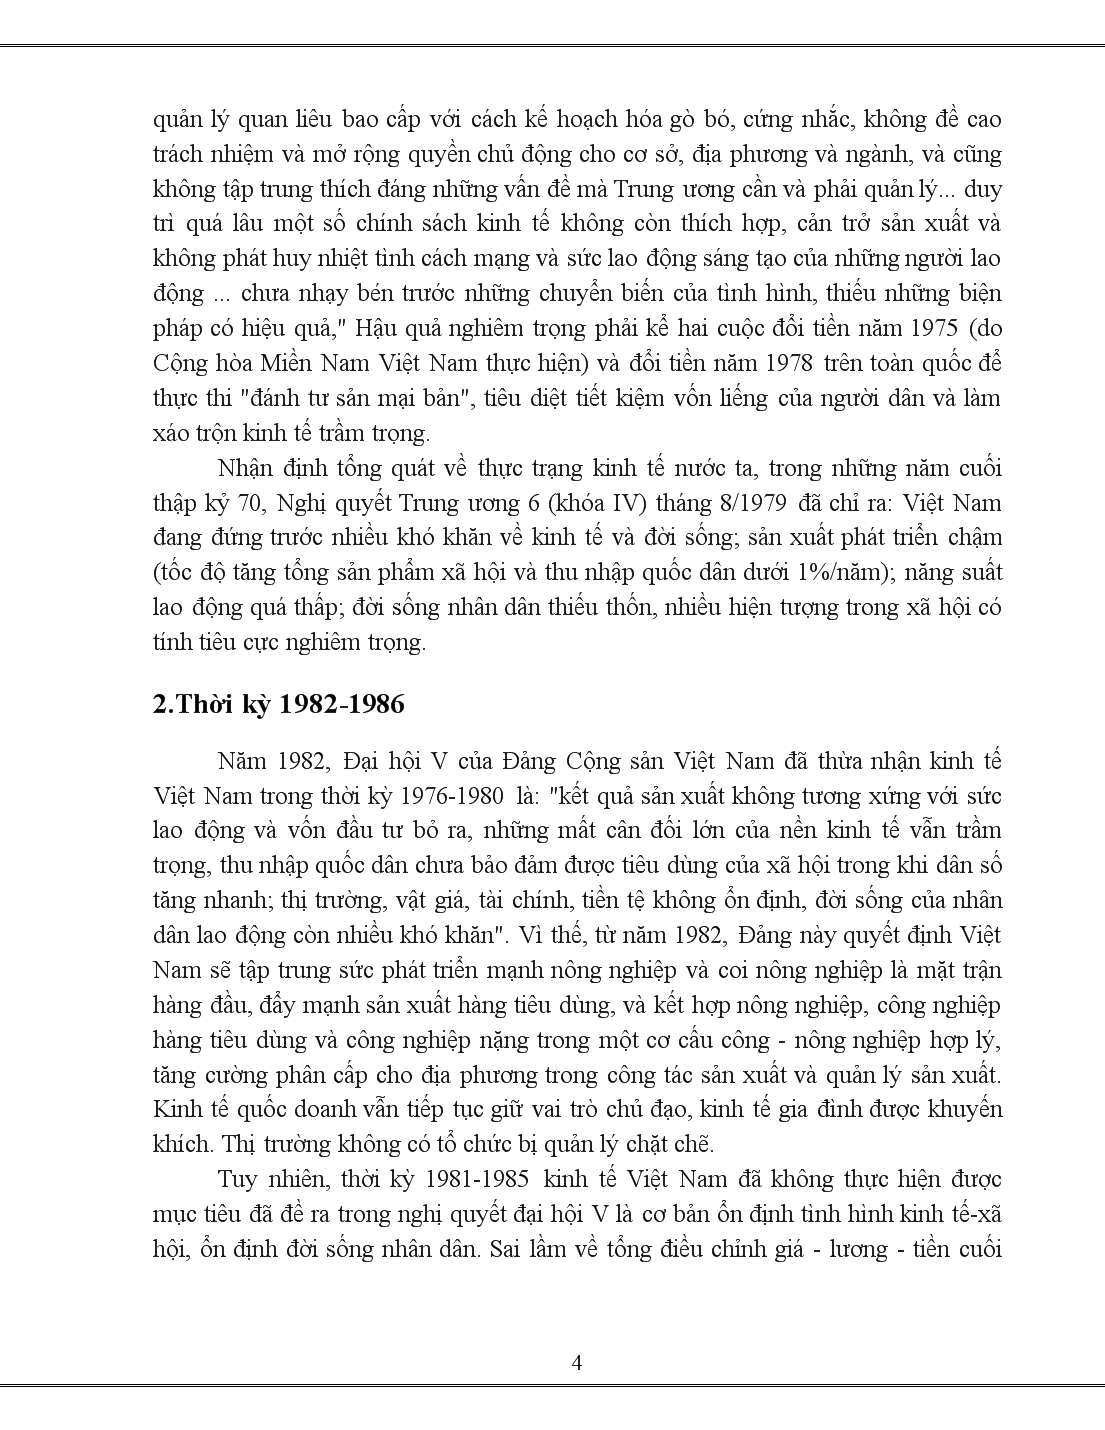 Tiểu luận Quá trình đổi mới tư duy kinh tế ở Việt Nam giai đoạn 1975 đến nay trang 4